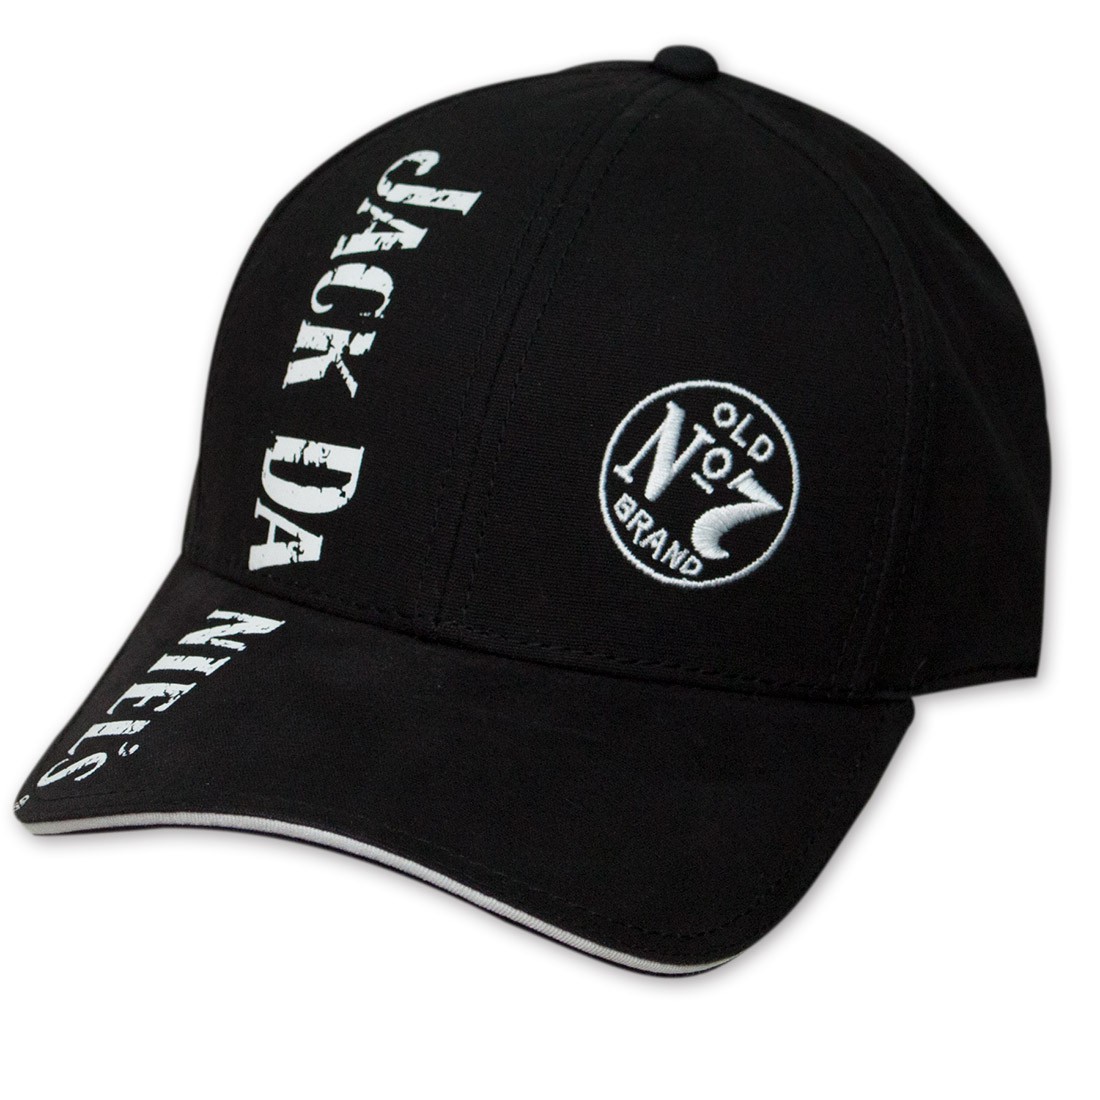 Jack Daniel's Old No. 7 Vertical Logo Hat